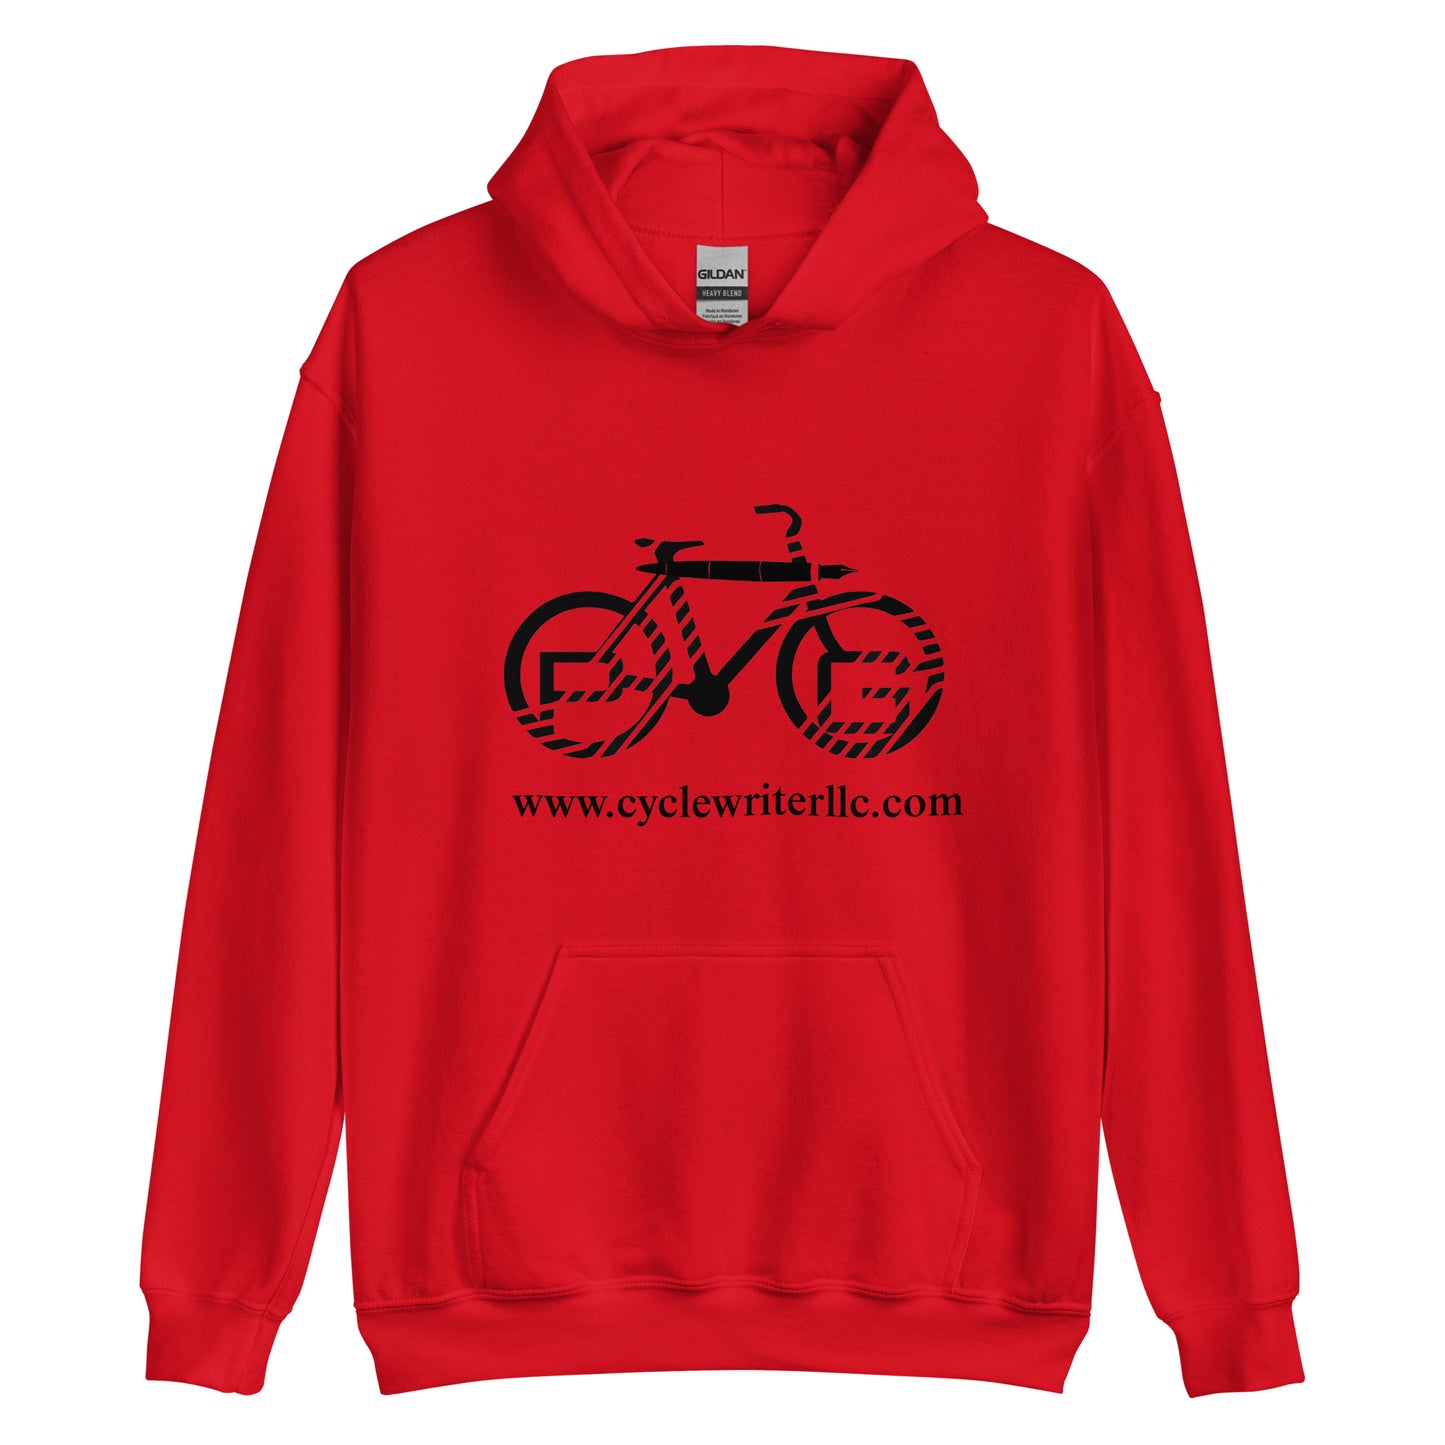 Cyclewriterllc.com Hoodie